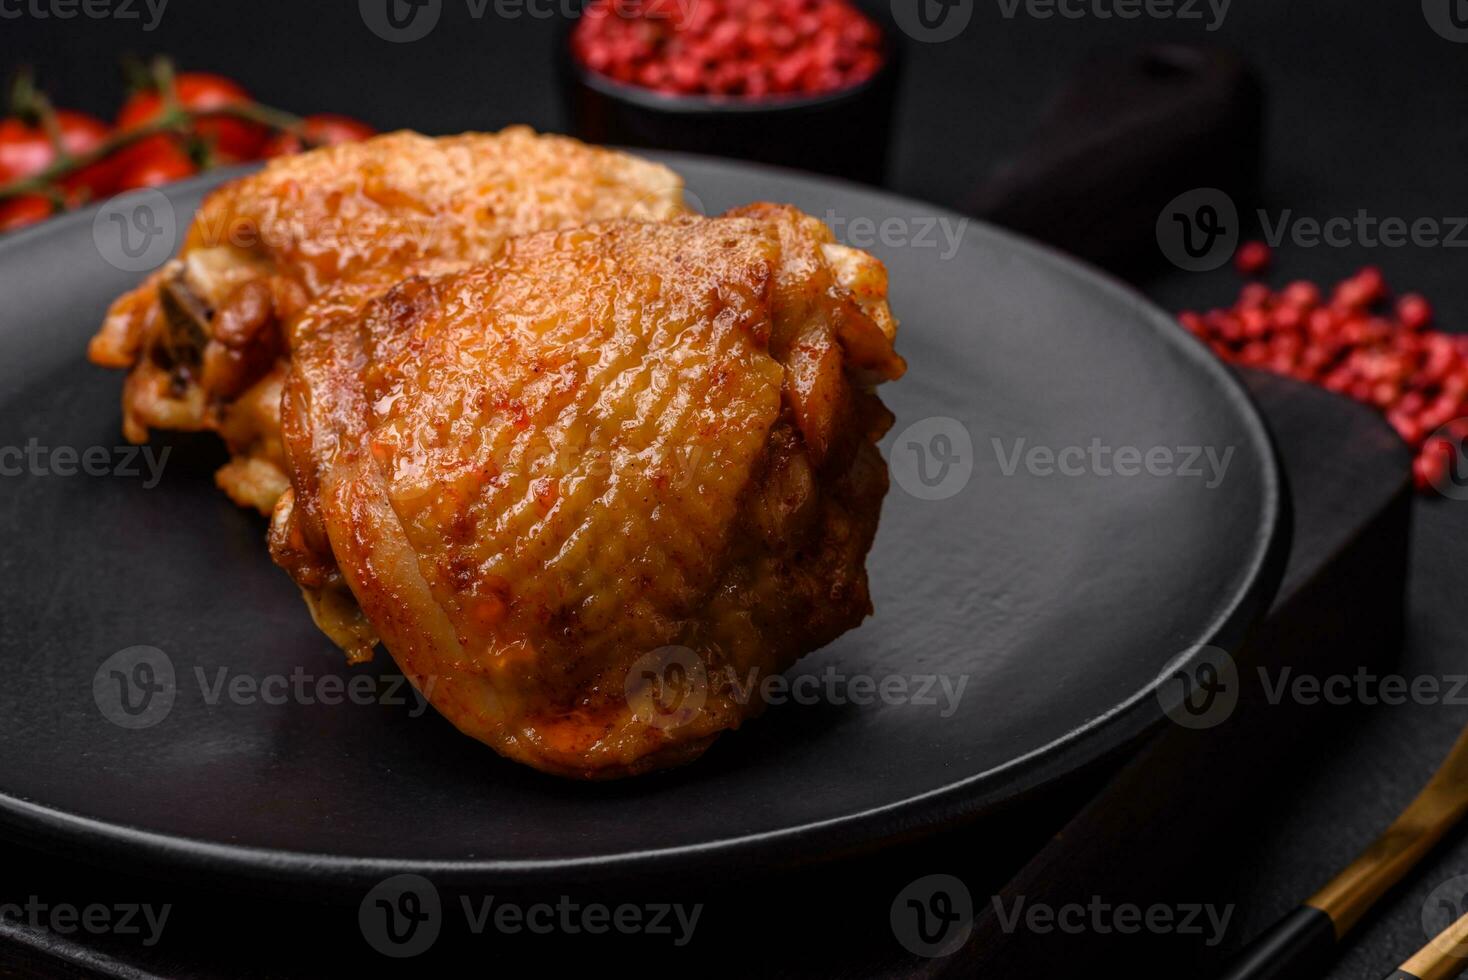 utsökt saftig kyckling låren bakad med salt, kryddor och örter i en keramisk tallrik foto